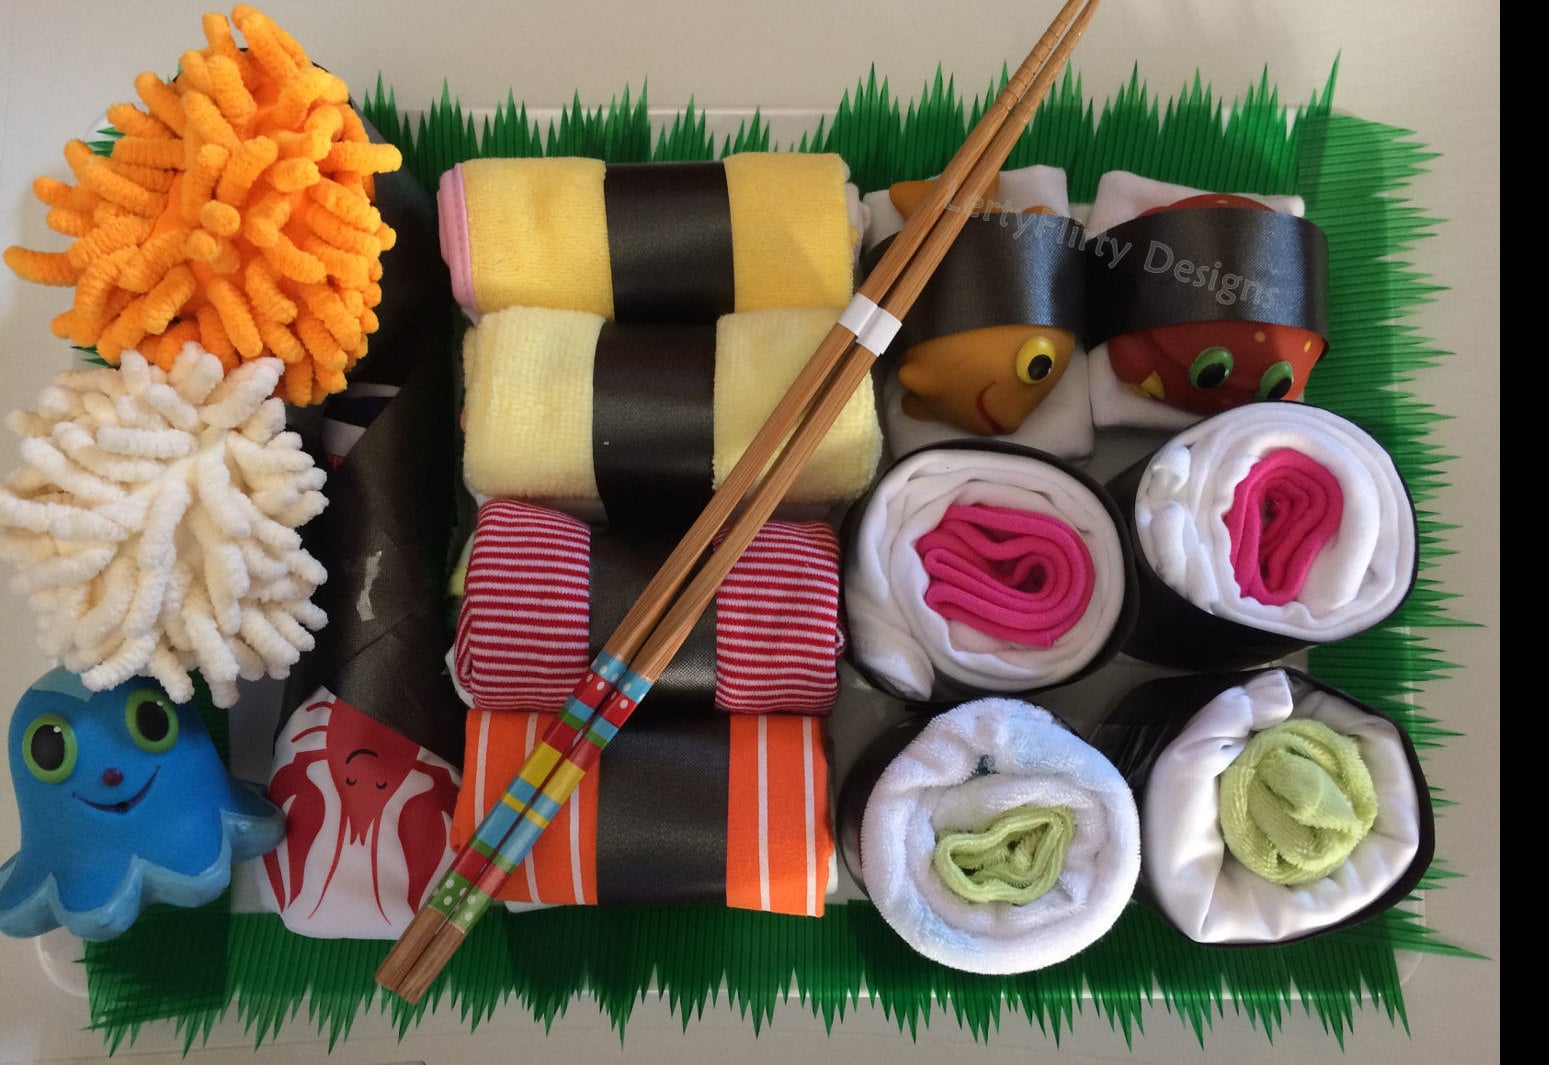 Sushi Baby Gift Box